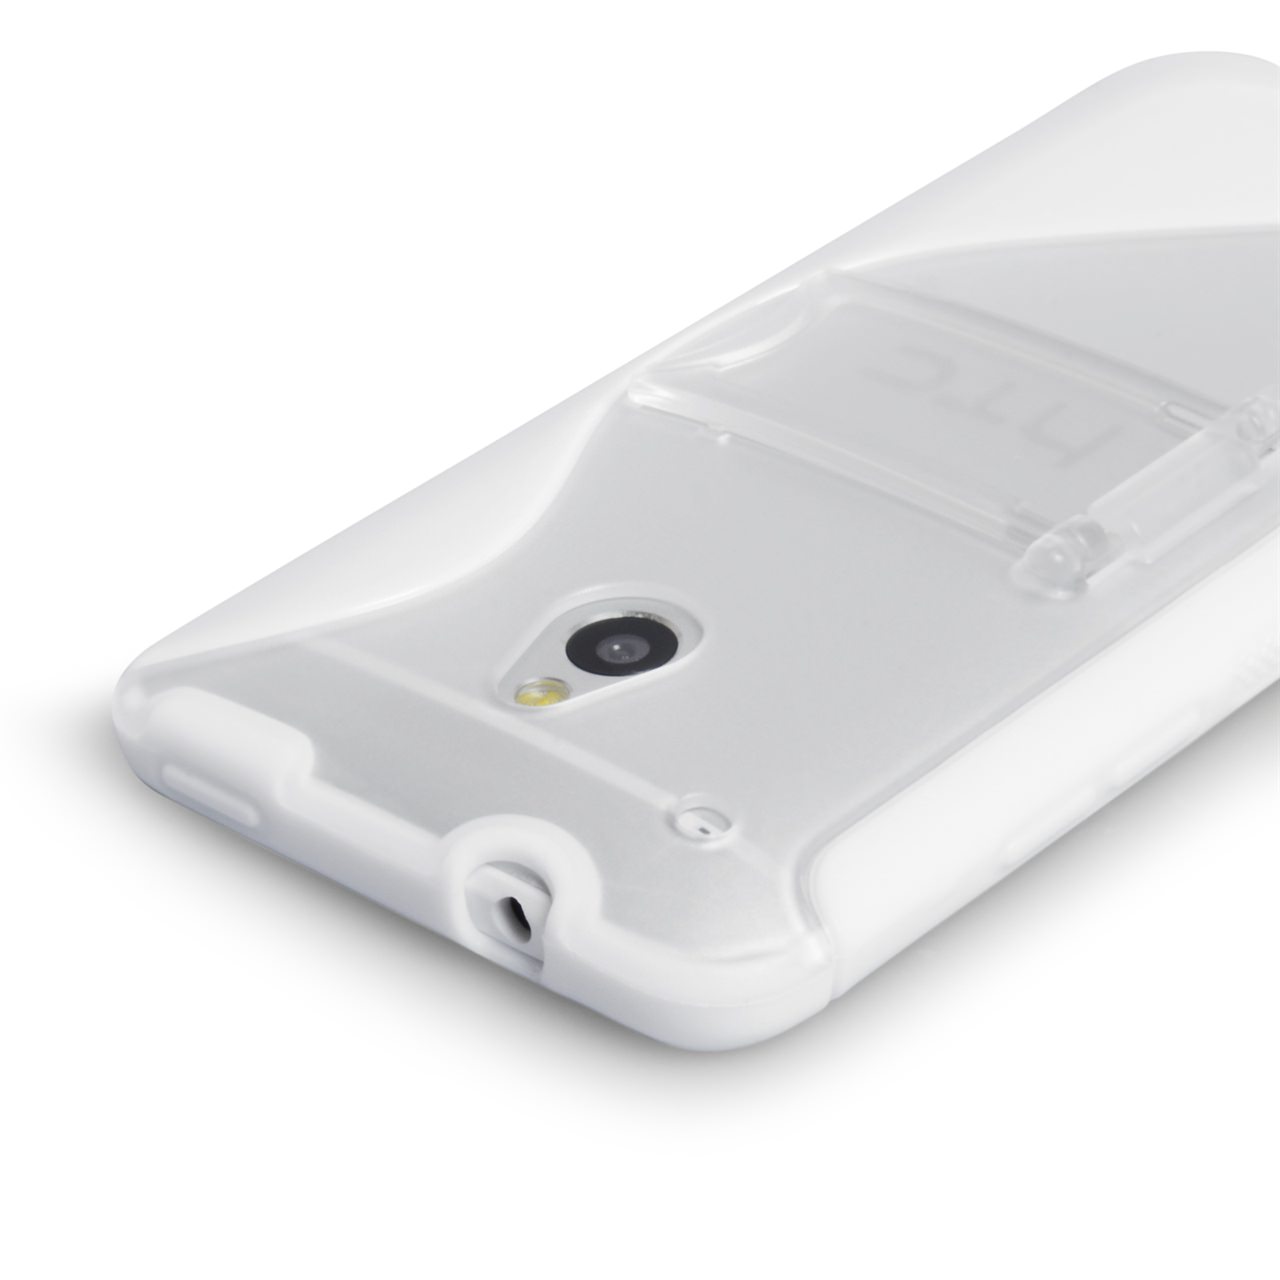 Caseflex HTC One Mini Gel Stand Case - White